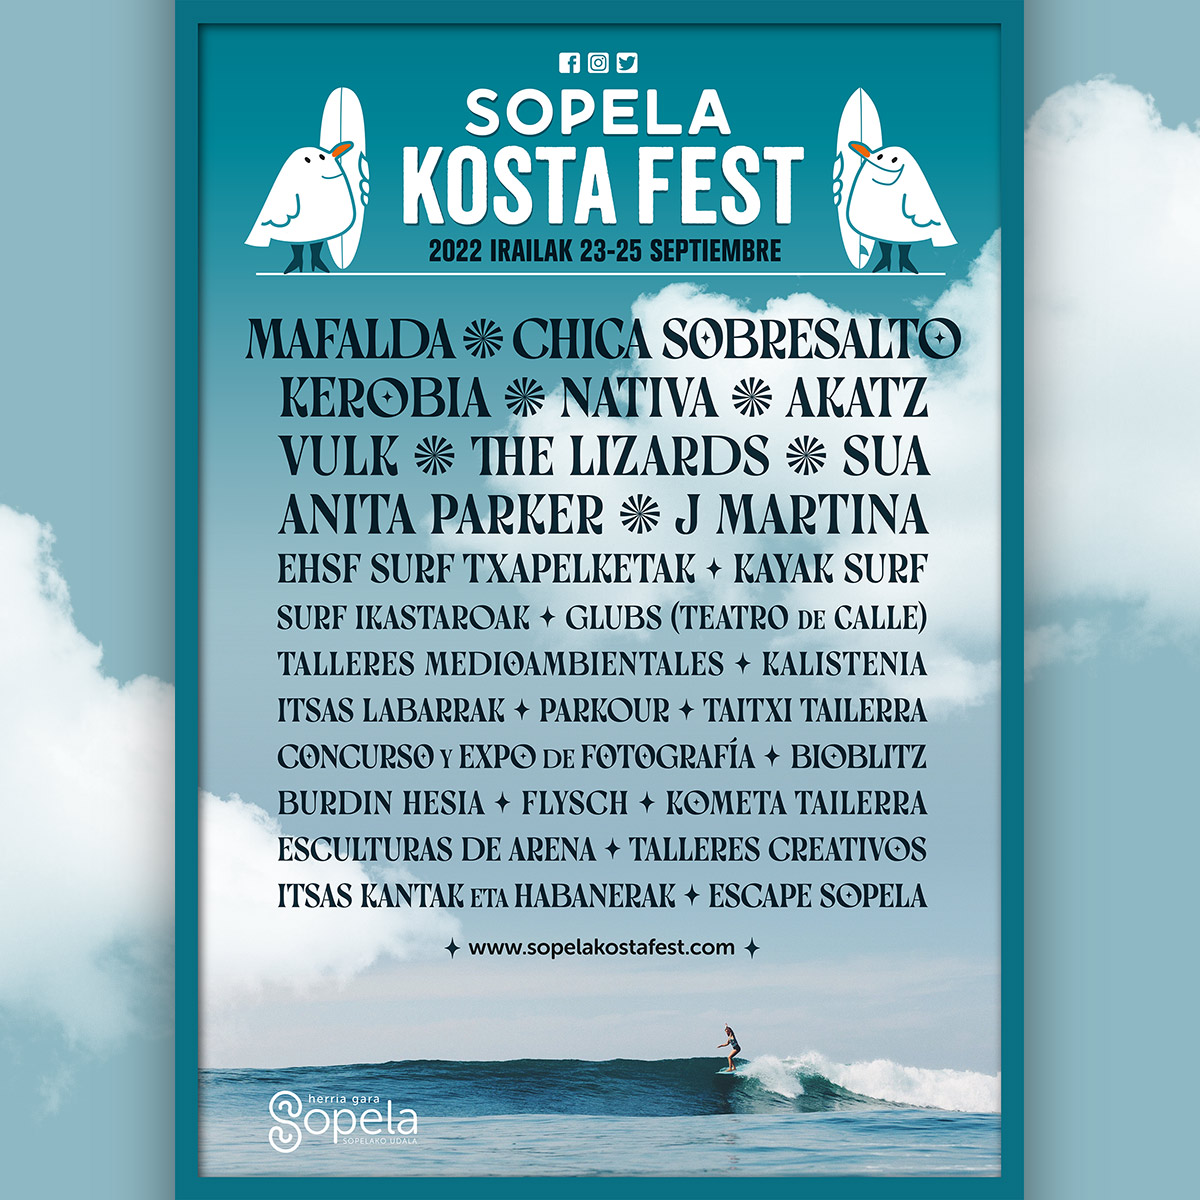 Musika, natura eta surfa dira beste urte batez Sopela Kosta Fest jaialdiaren protagonistak